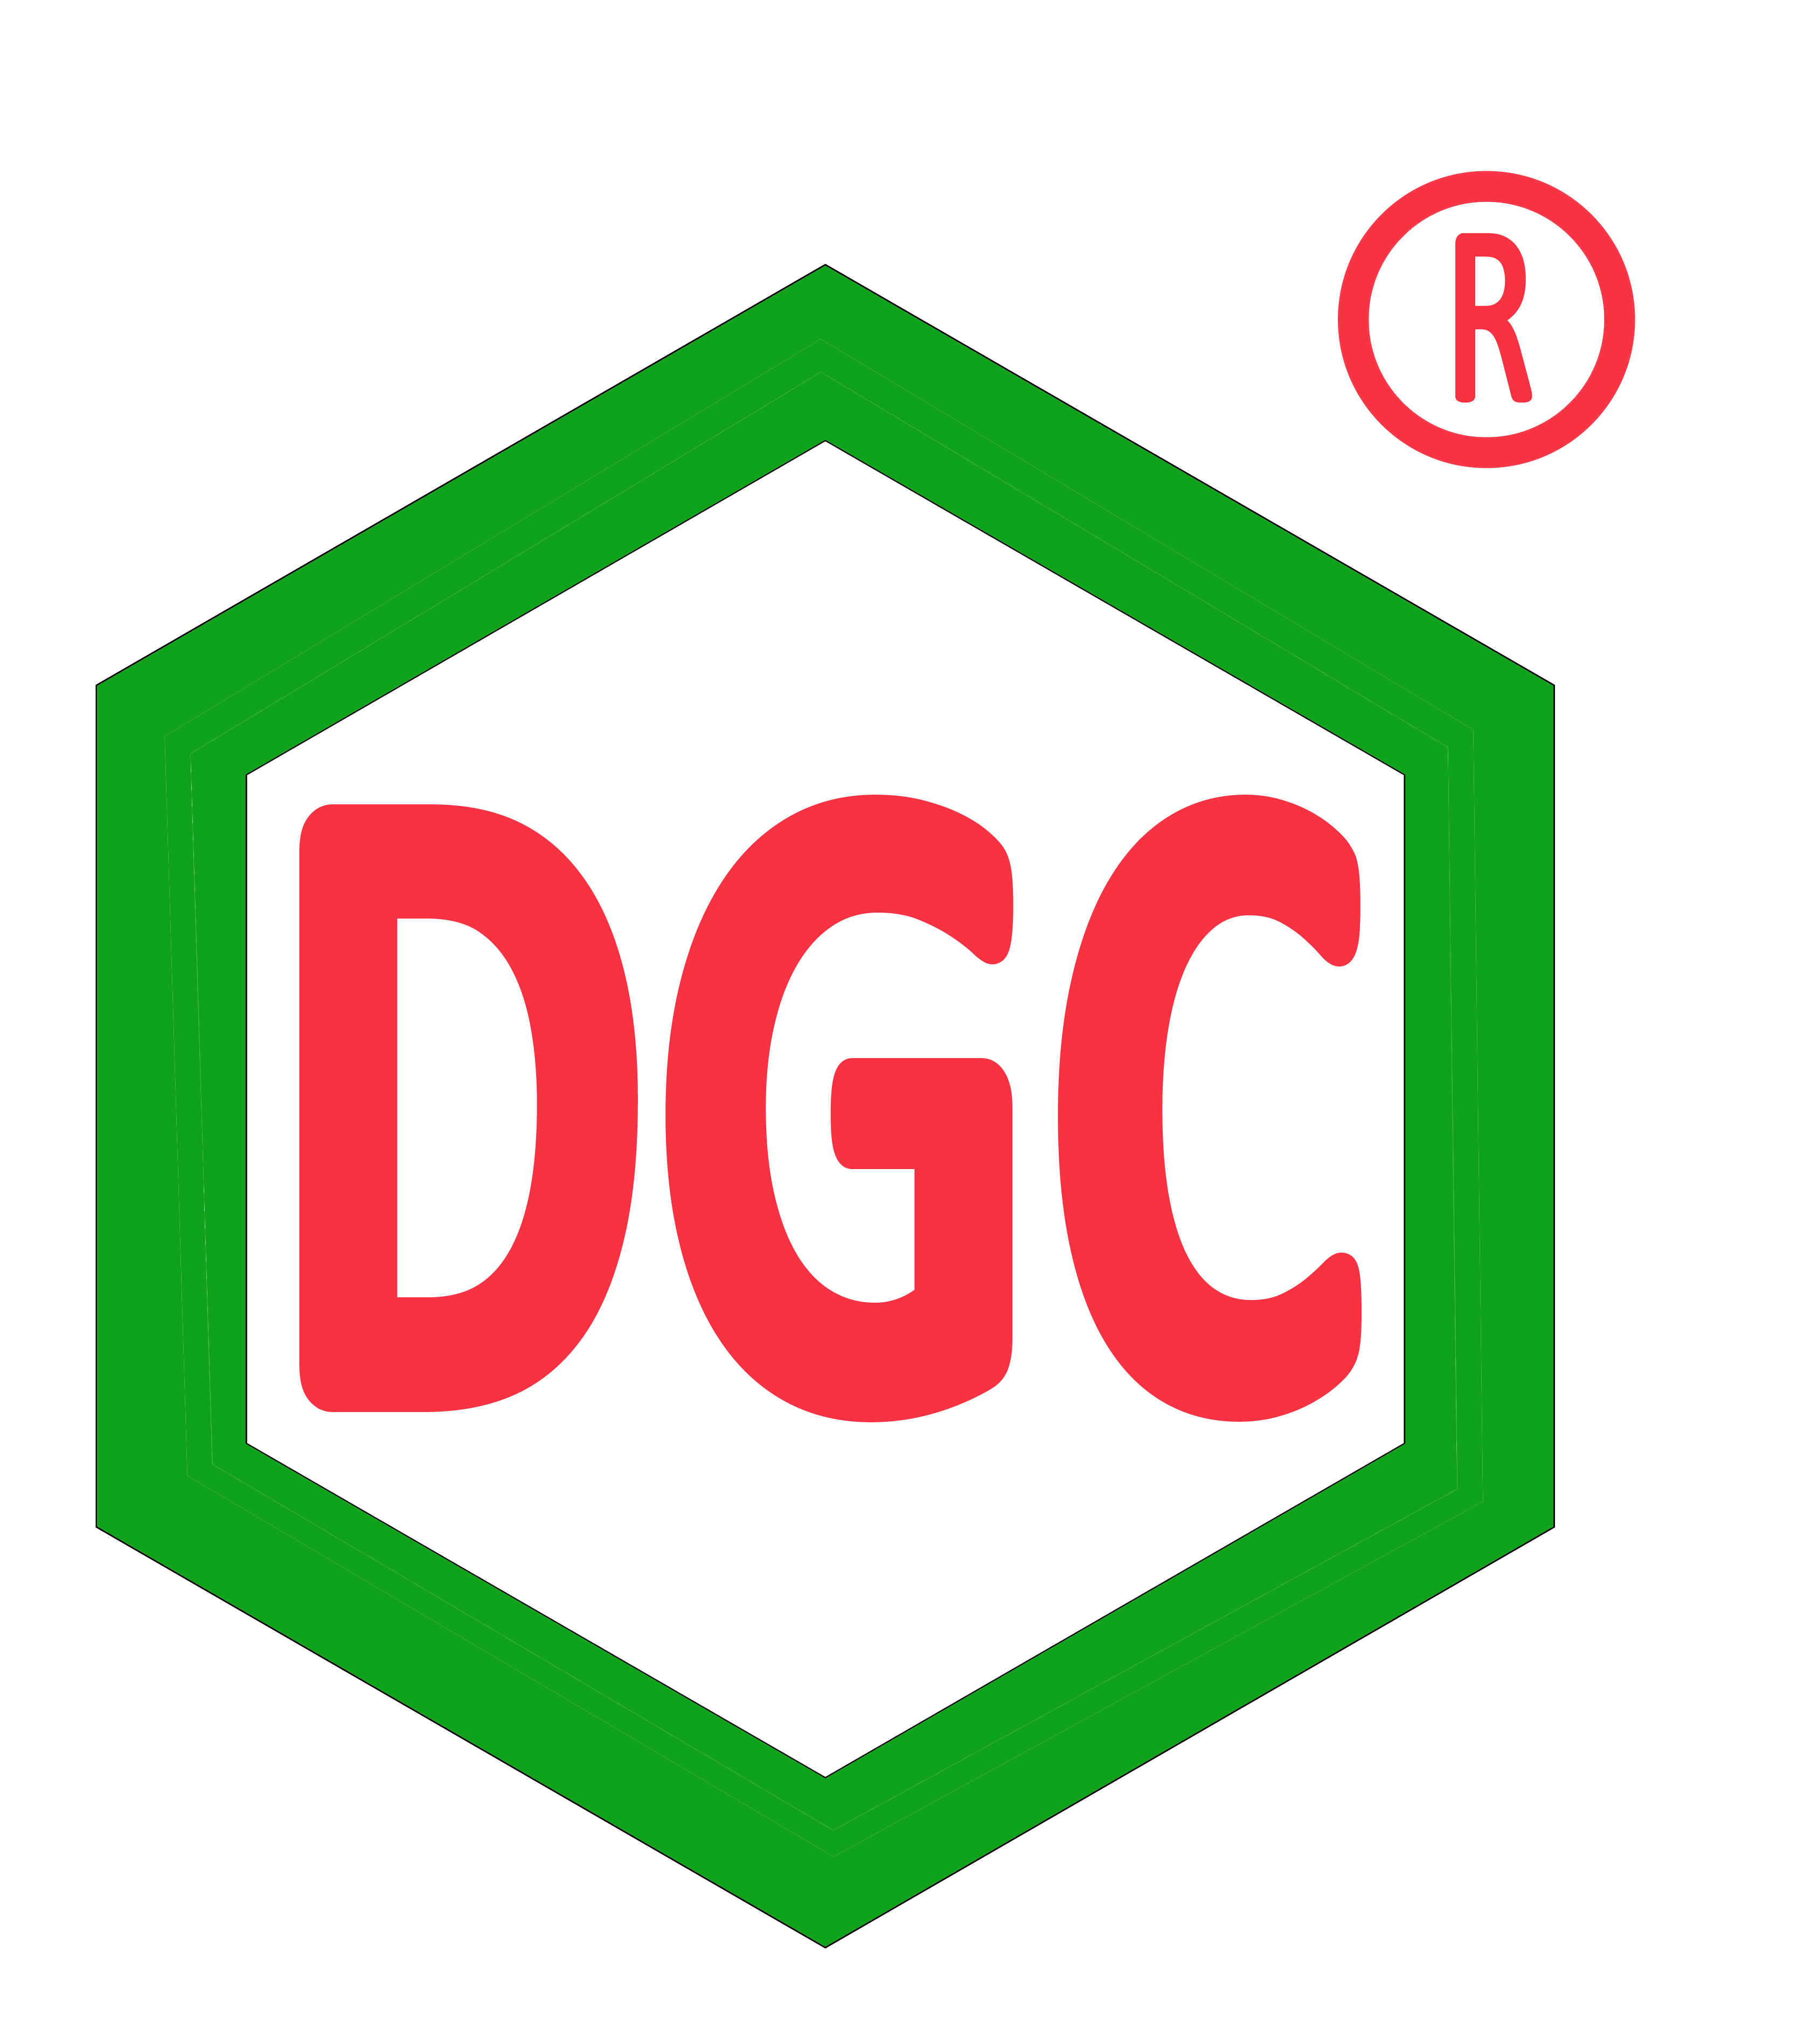 DGC: Đột biến từ liên doanh, liên kết, lãi ròng quý 3 gấp 2 cùng kỳ